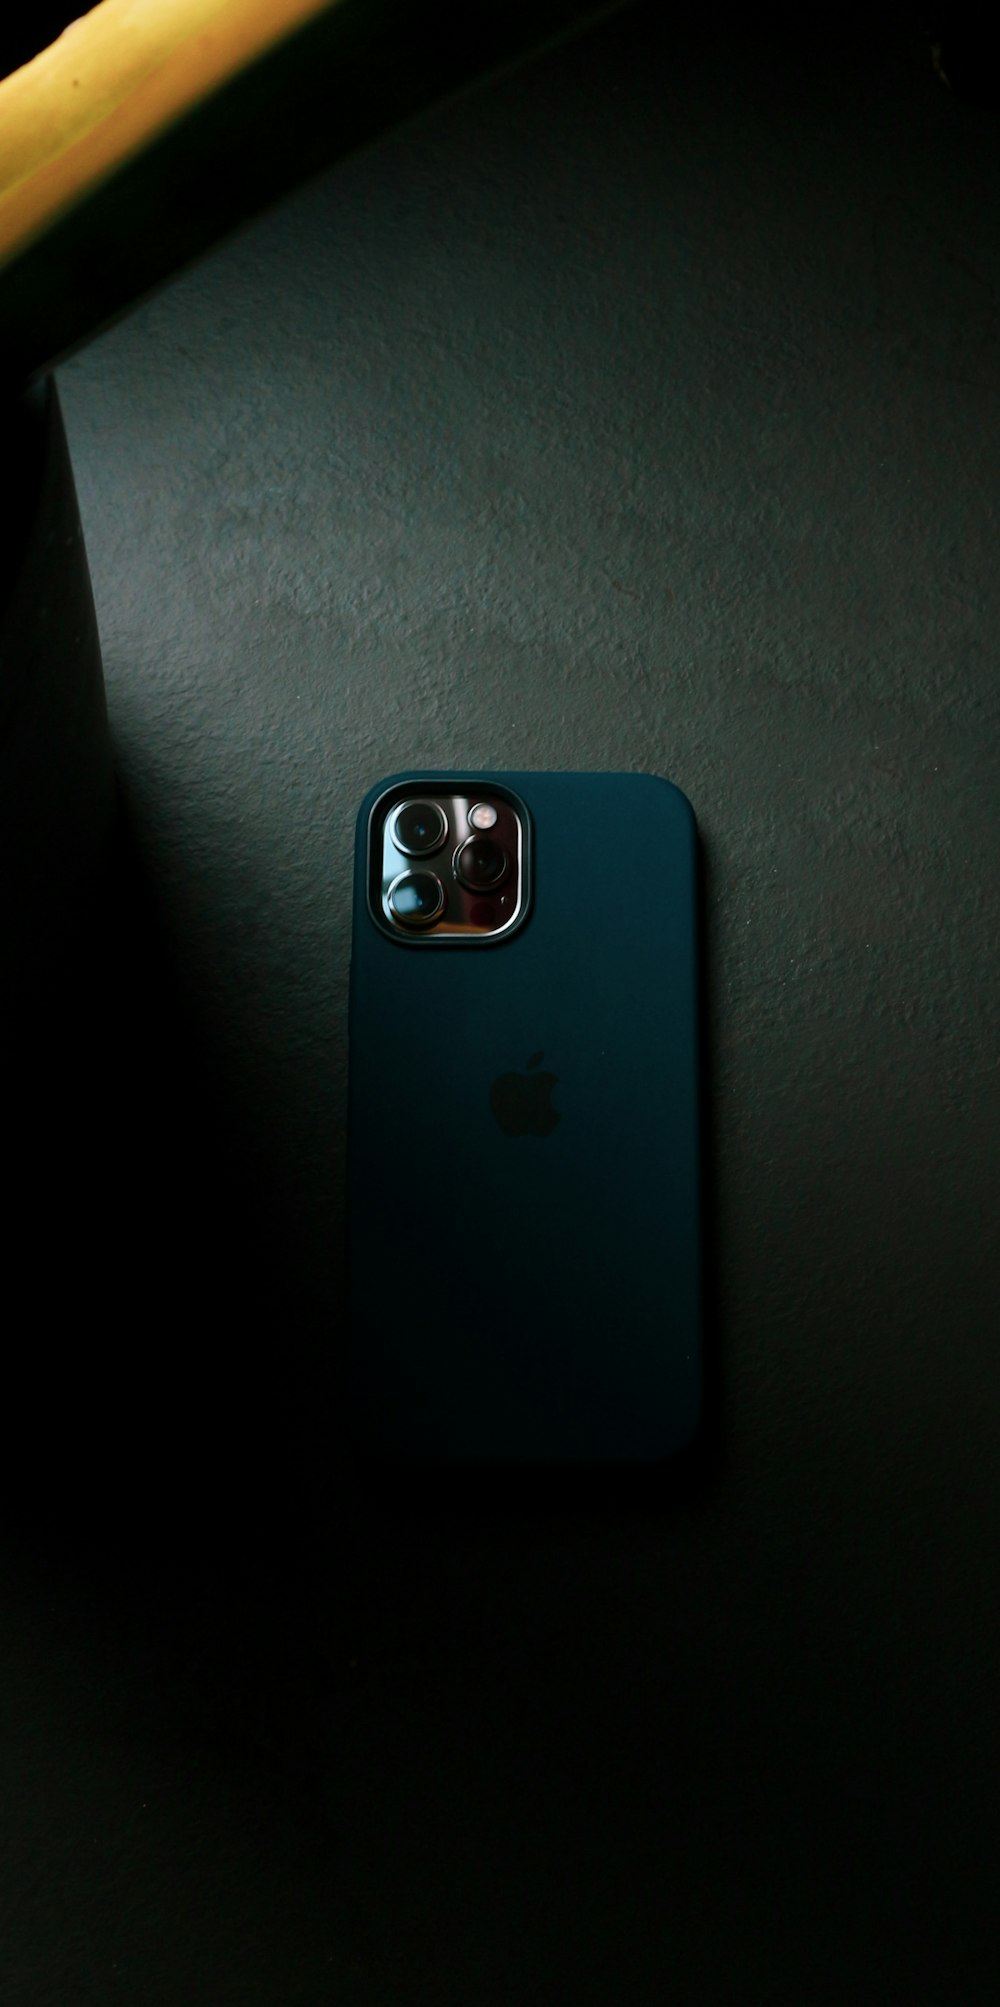 caso azul do iphone no têxtil cinza